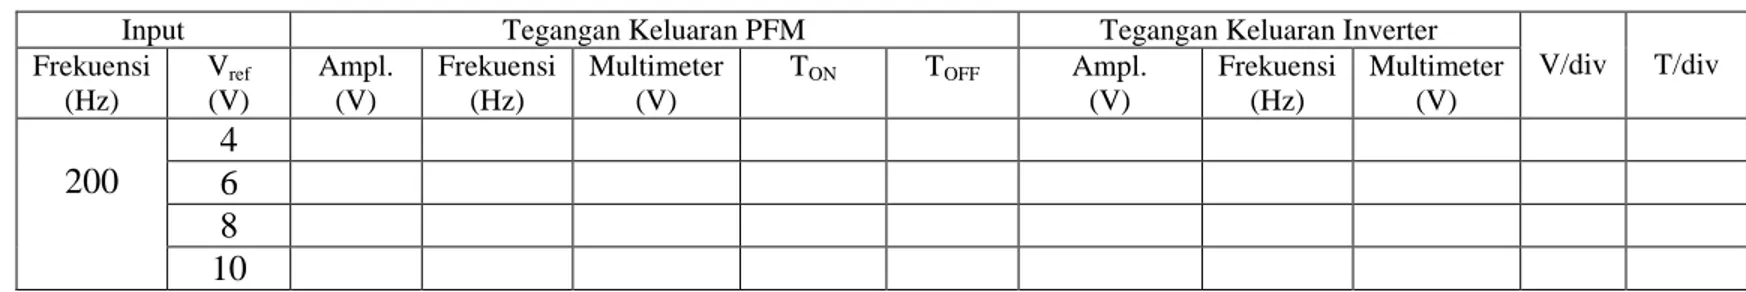 Tabel 1. Tegangan keluaran pada saat frekuensi PFM tetap (200 Hz) 